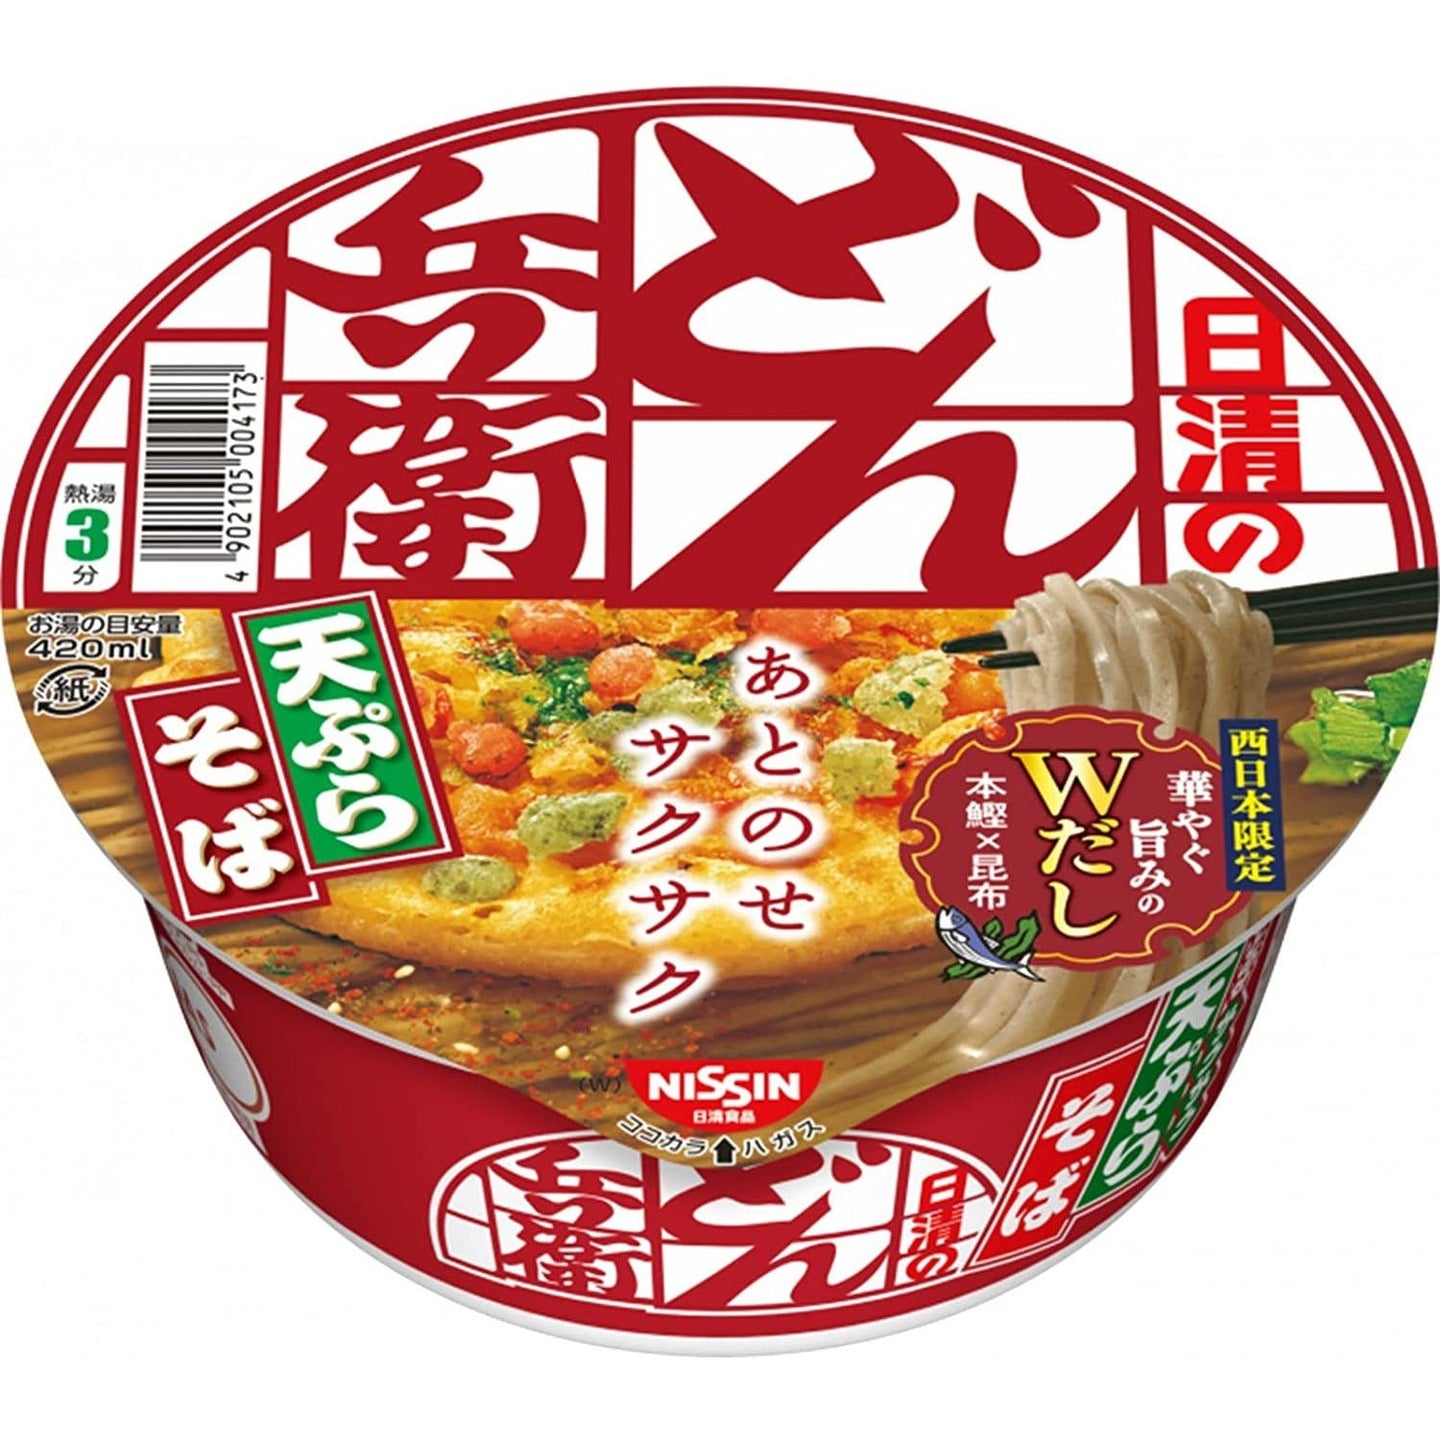 日清食品 兵衛系列 西日本限定天婦羅蕎麥麵